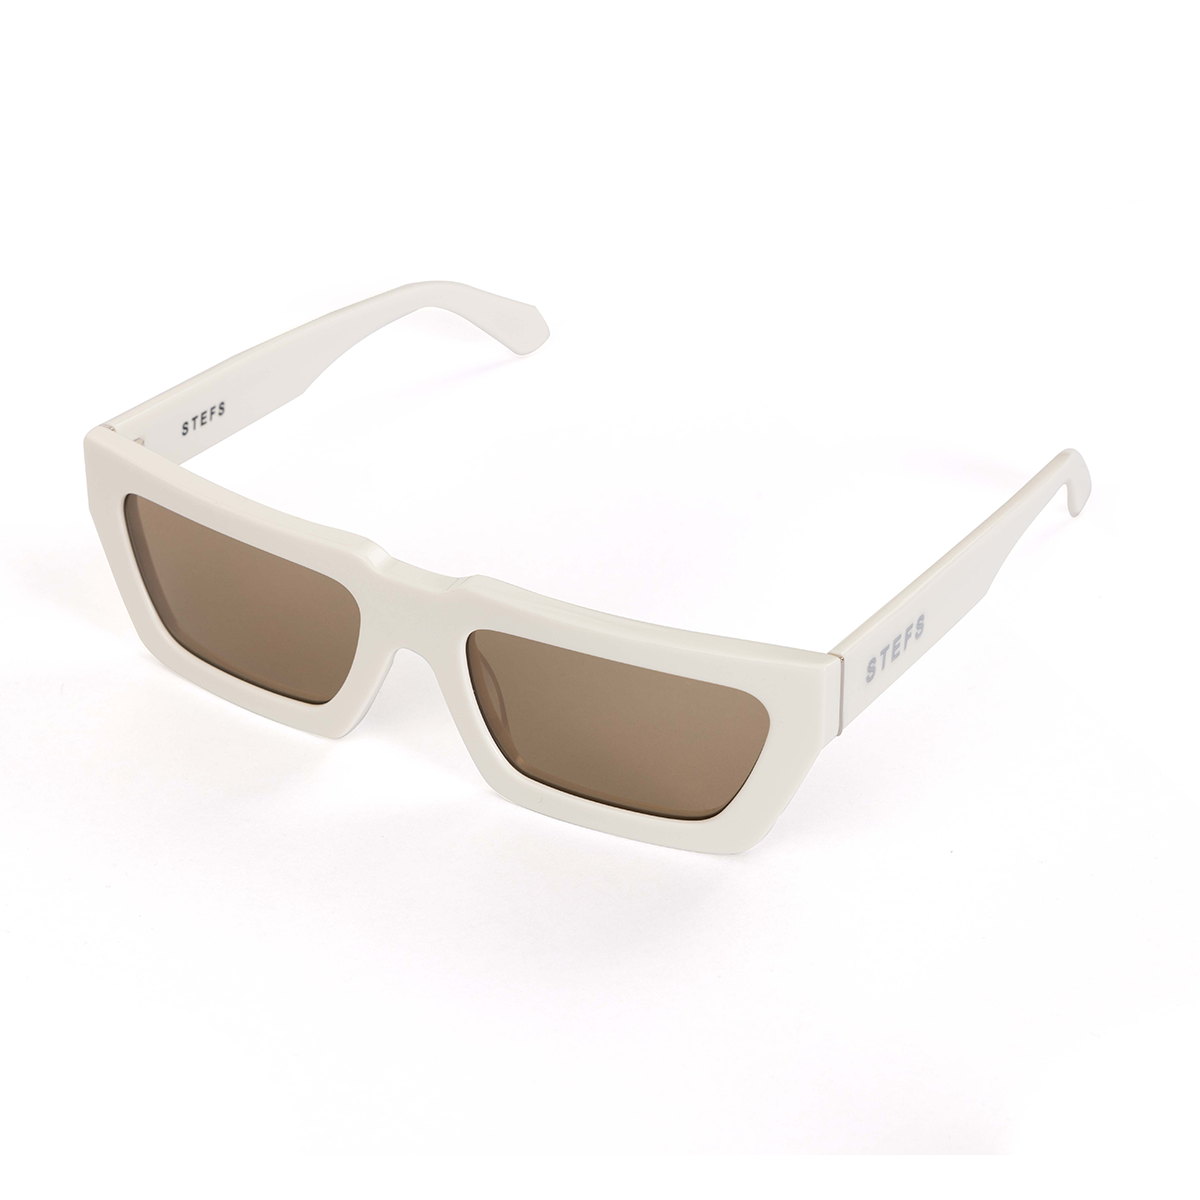 Cottesloe Seashell Sunglasses — STEFS SHADES